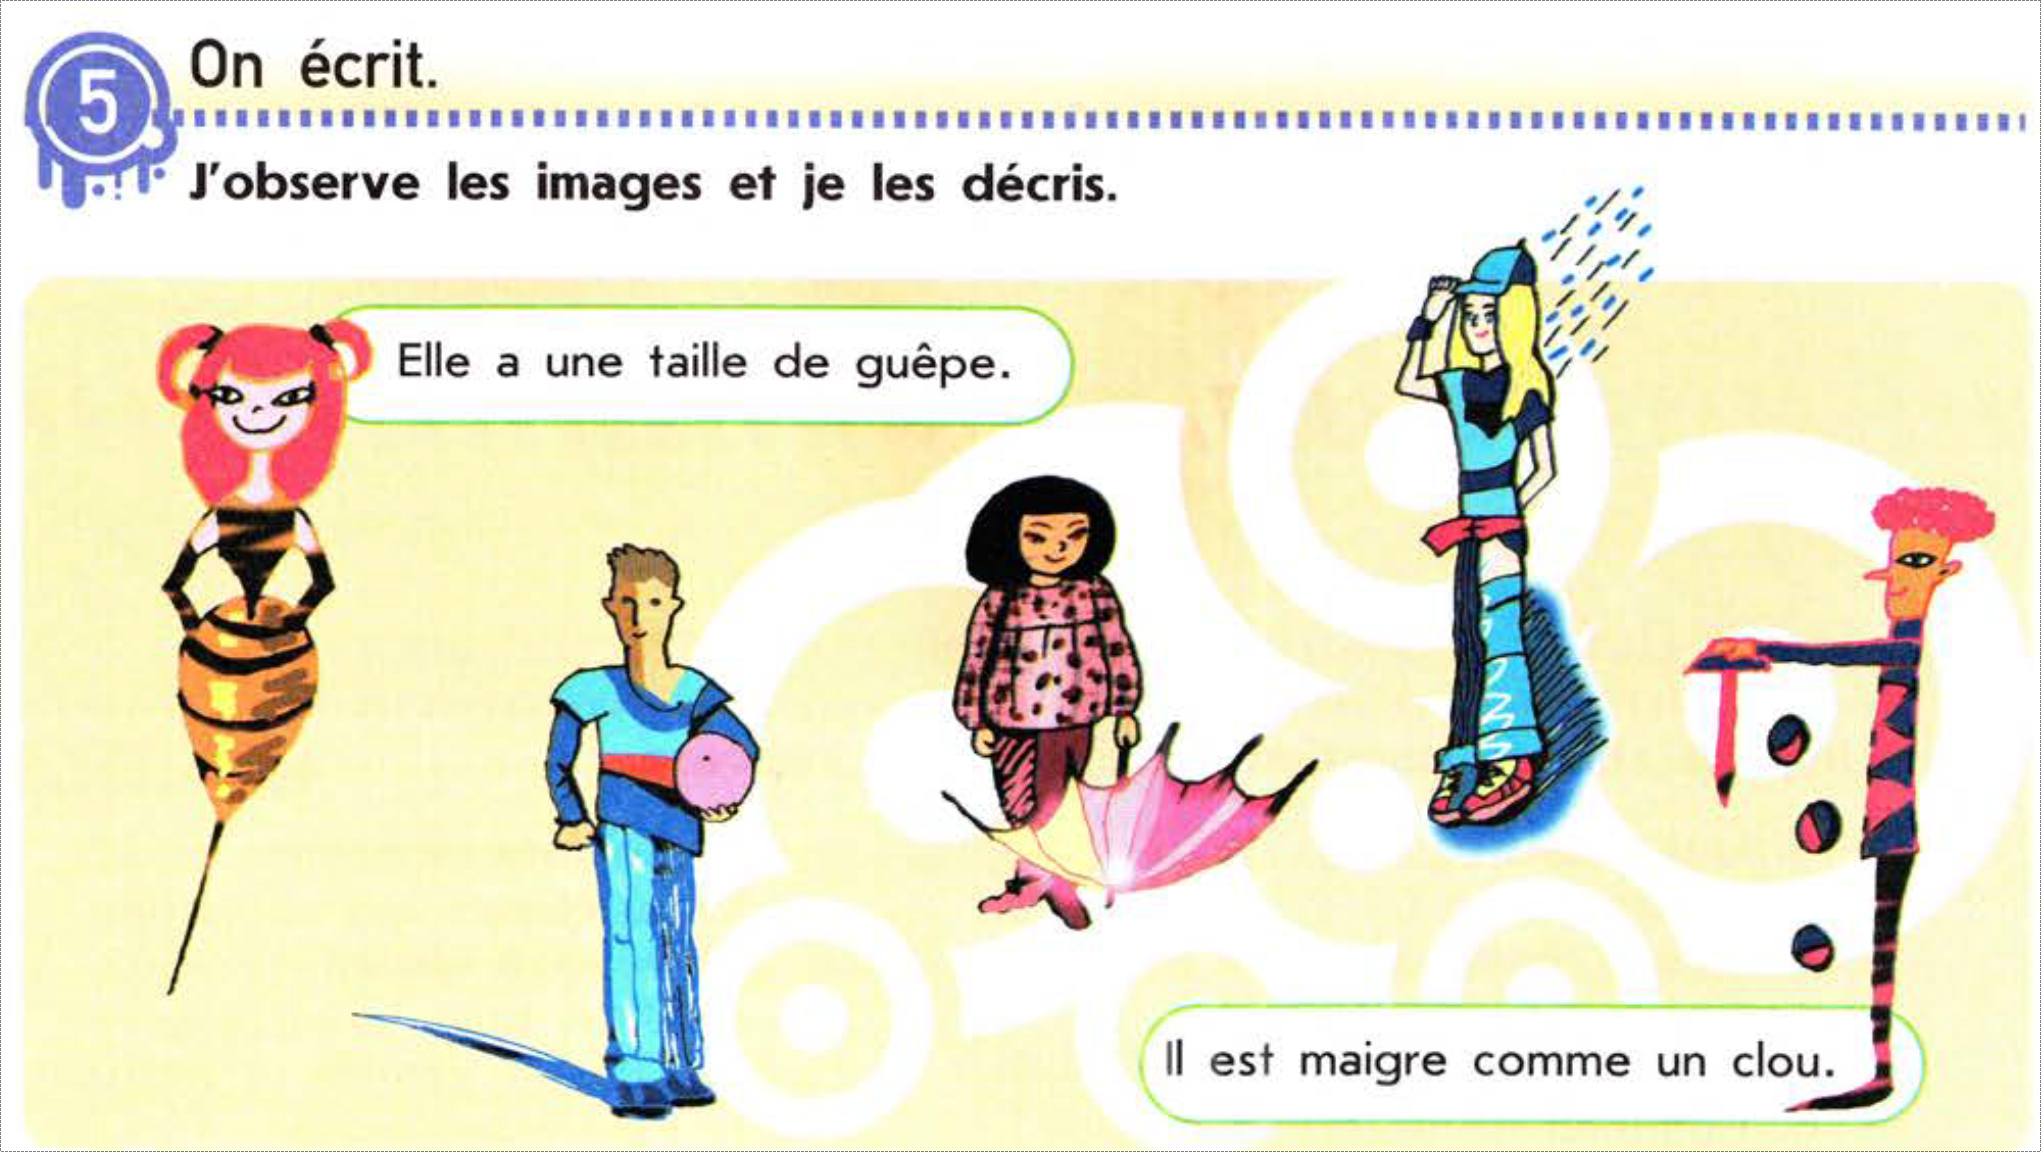 Задание из учебника Le Français C est Super! для 7 класса